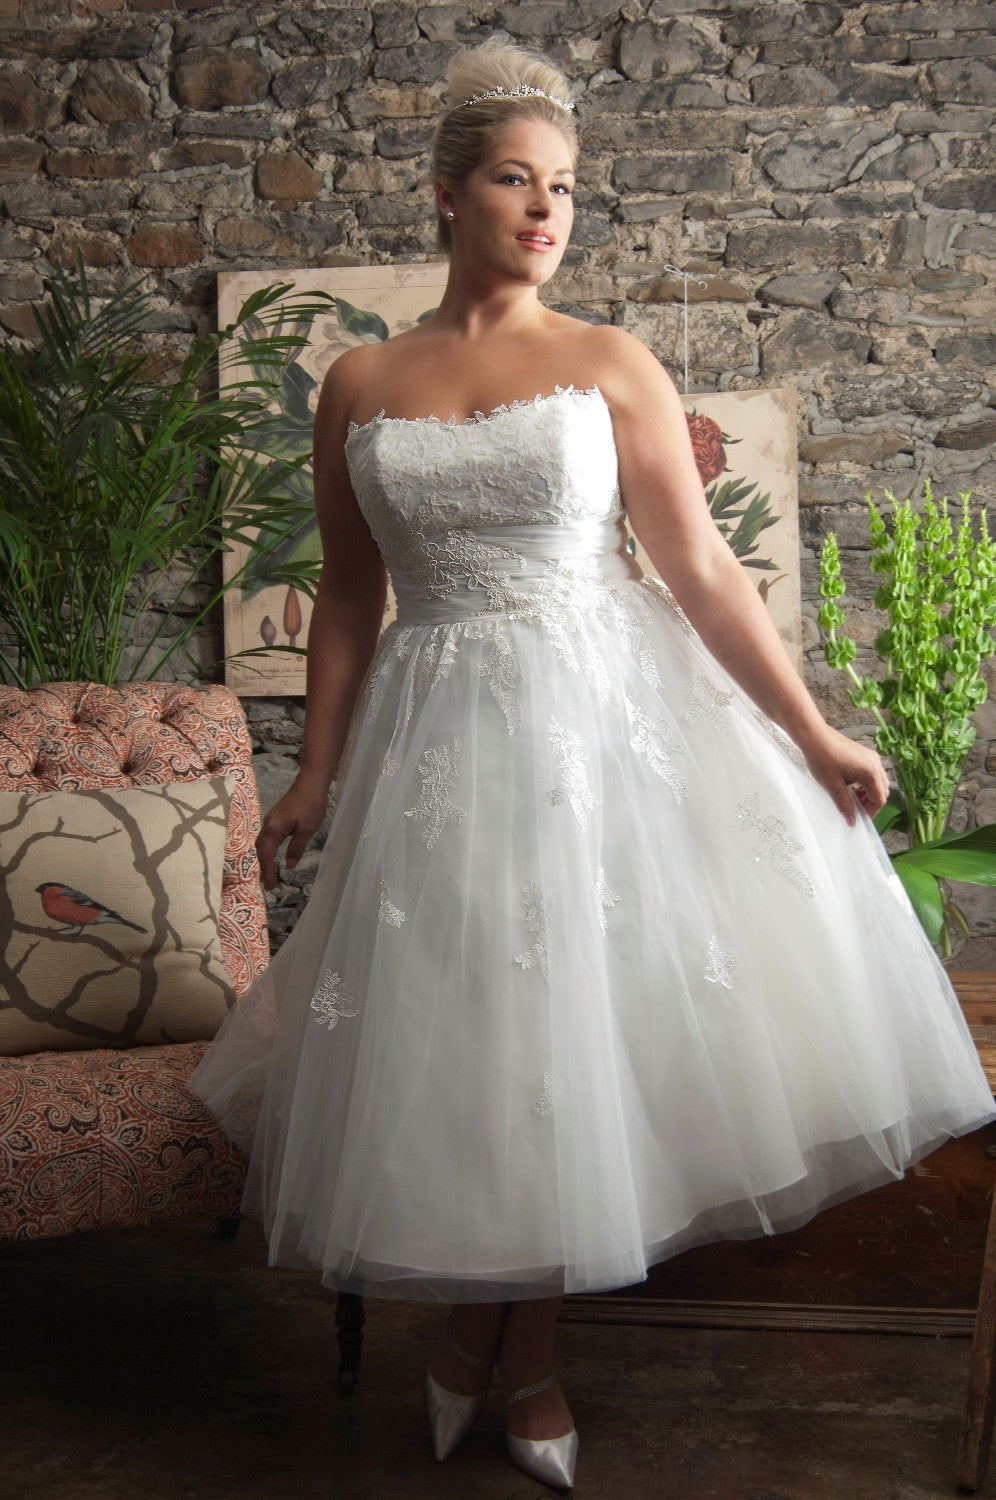 Dress 593: Callista Bridal "4203" waist 42